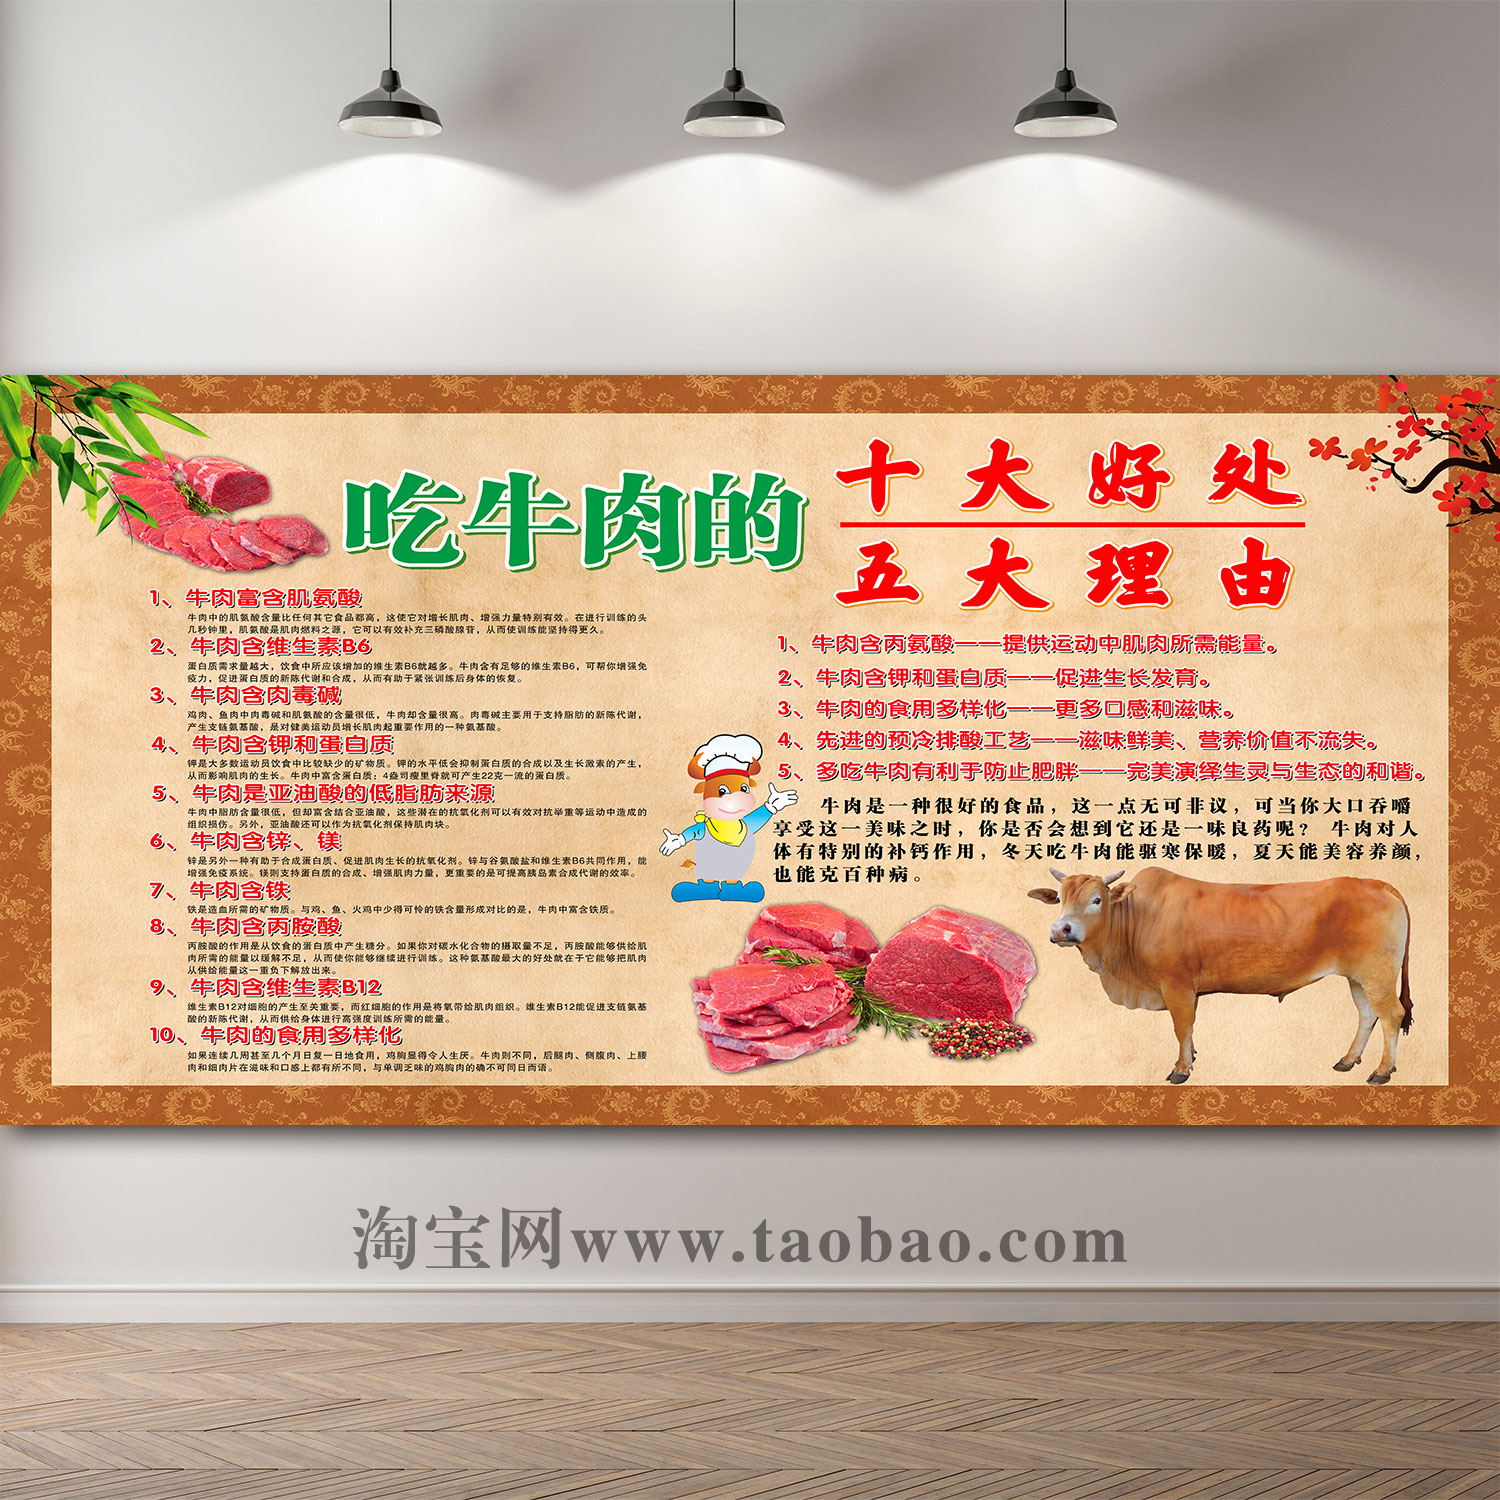 花溪牛肉粉墙贴壁画常德牛肉粉广告吃牛肉的好处贴纸牛肉米线海报 - 图0